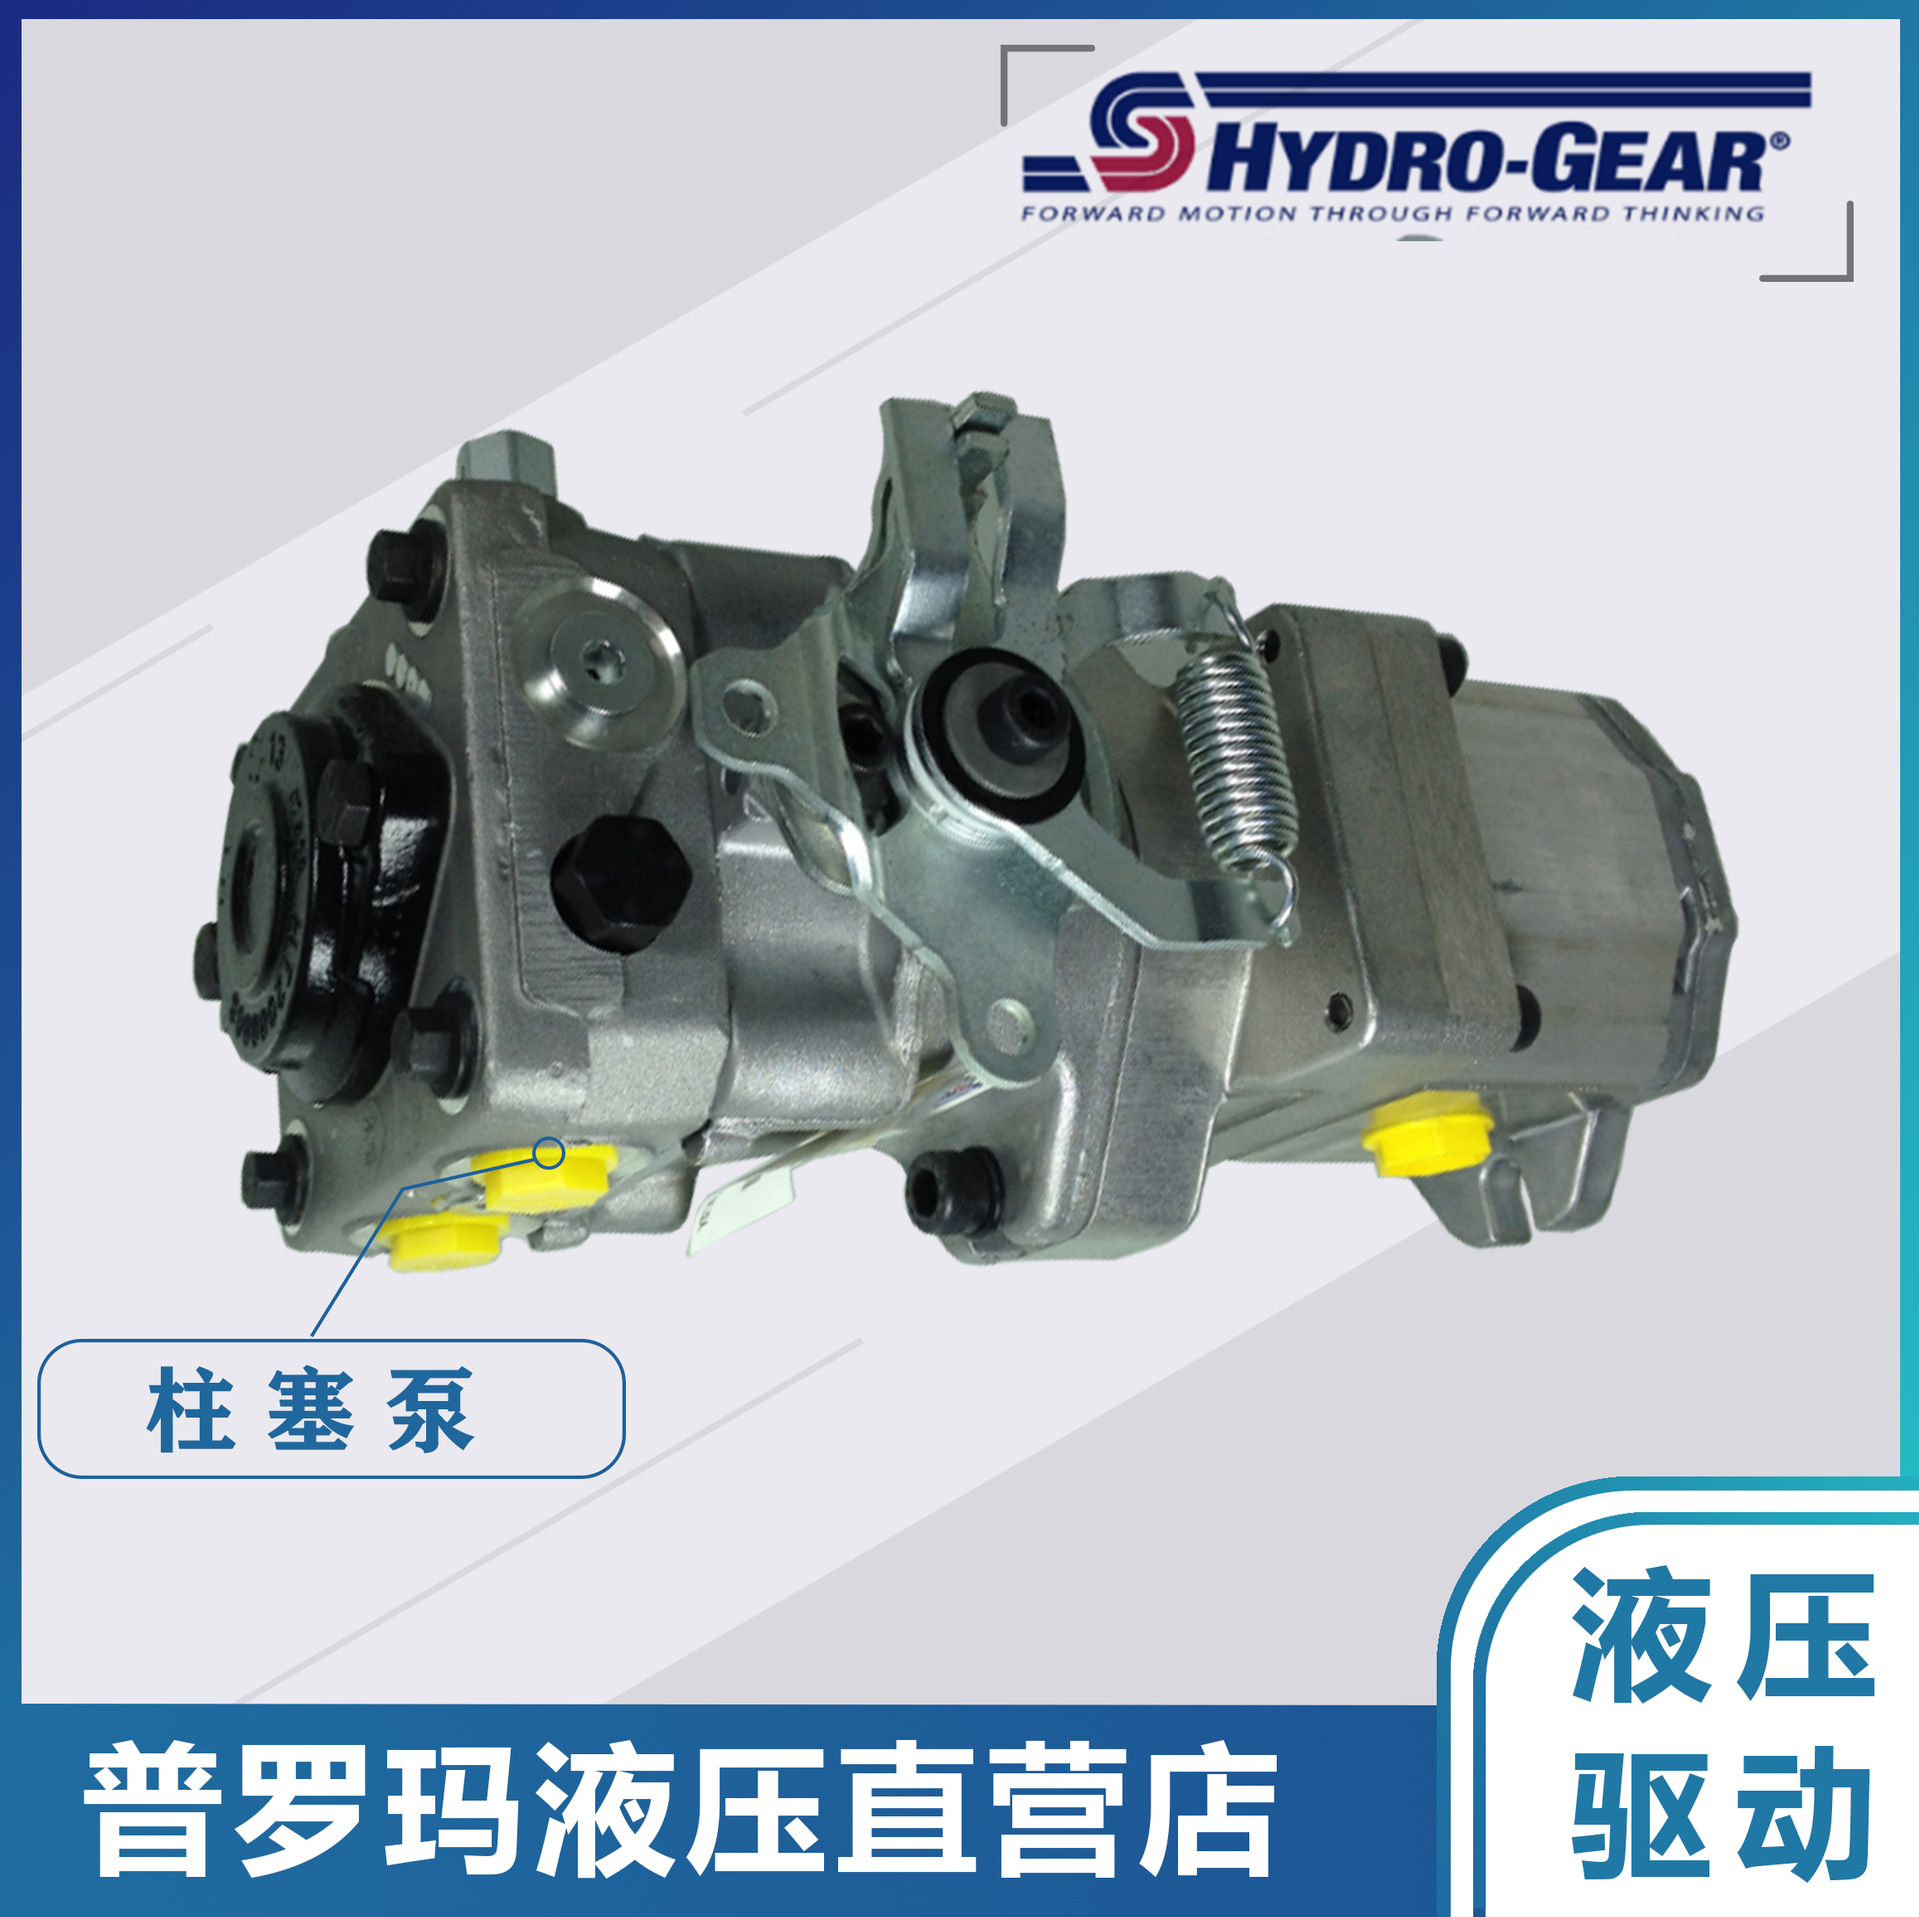 Hydro-Gear 变量柱塞串泵闭式行走系统PK-EBGG-EA1XXXXX液压油泵